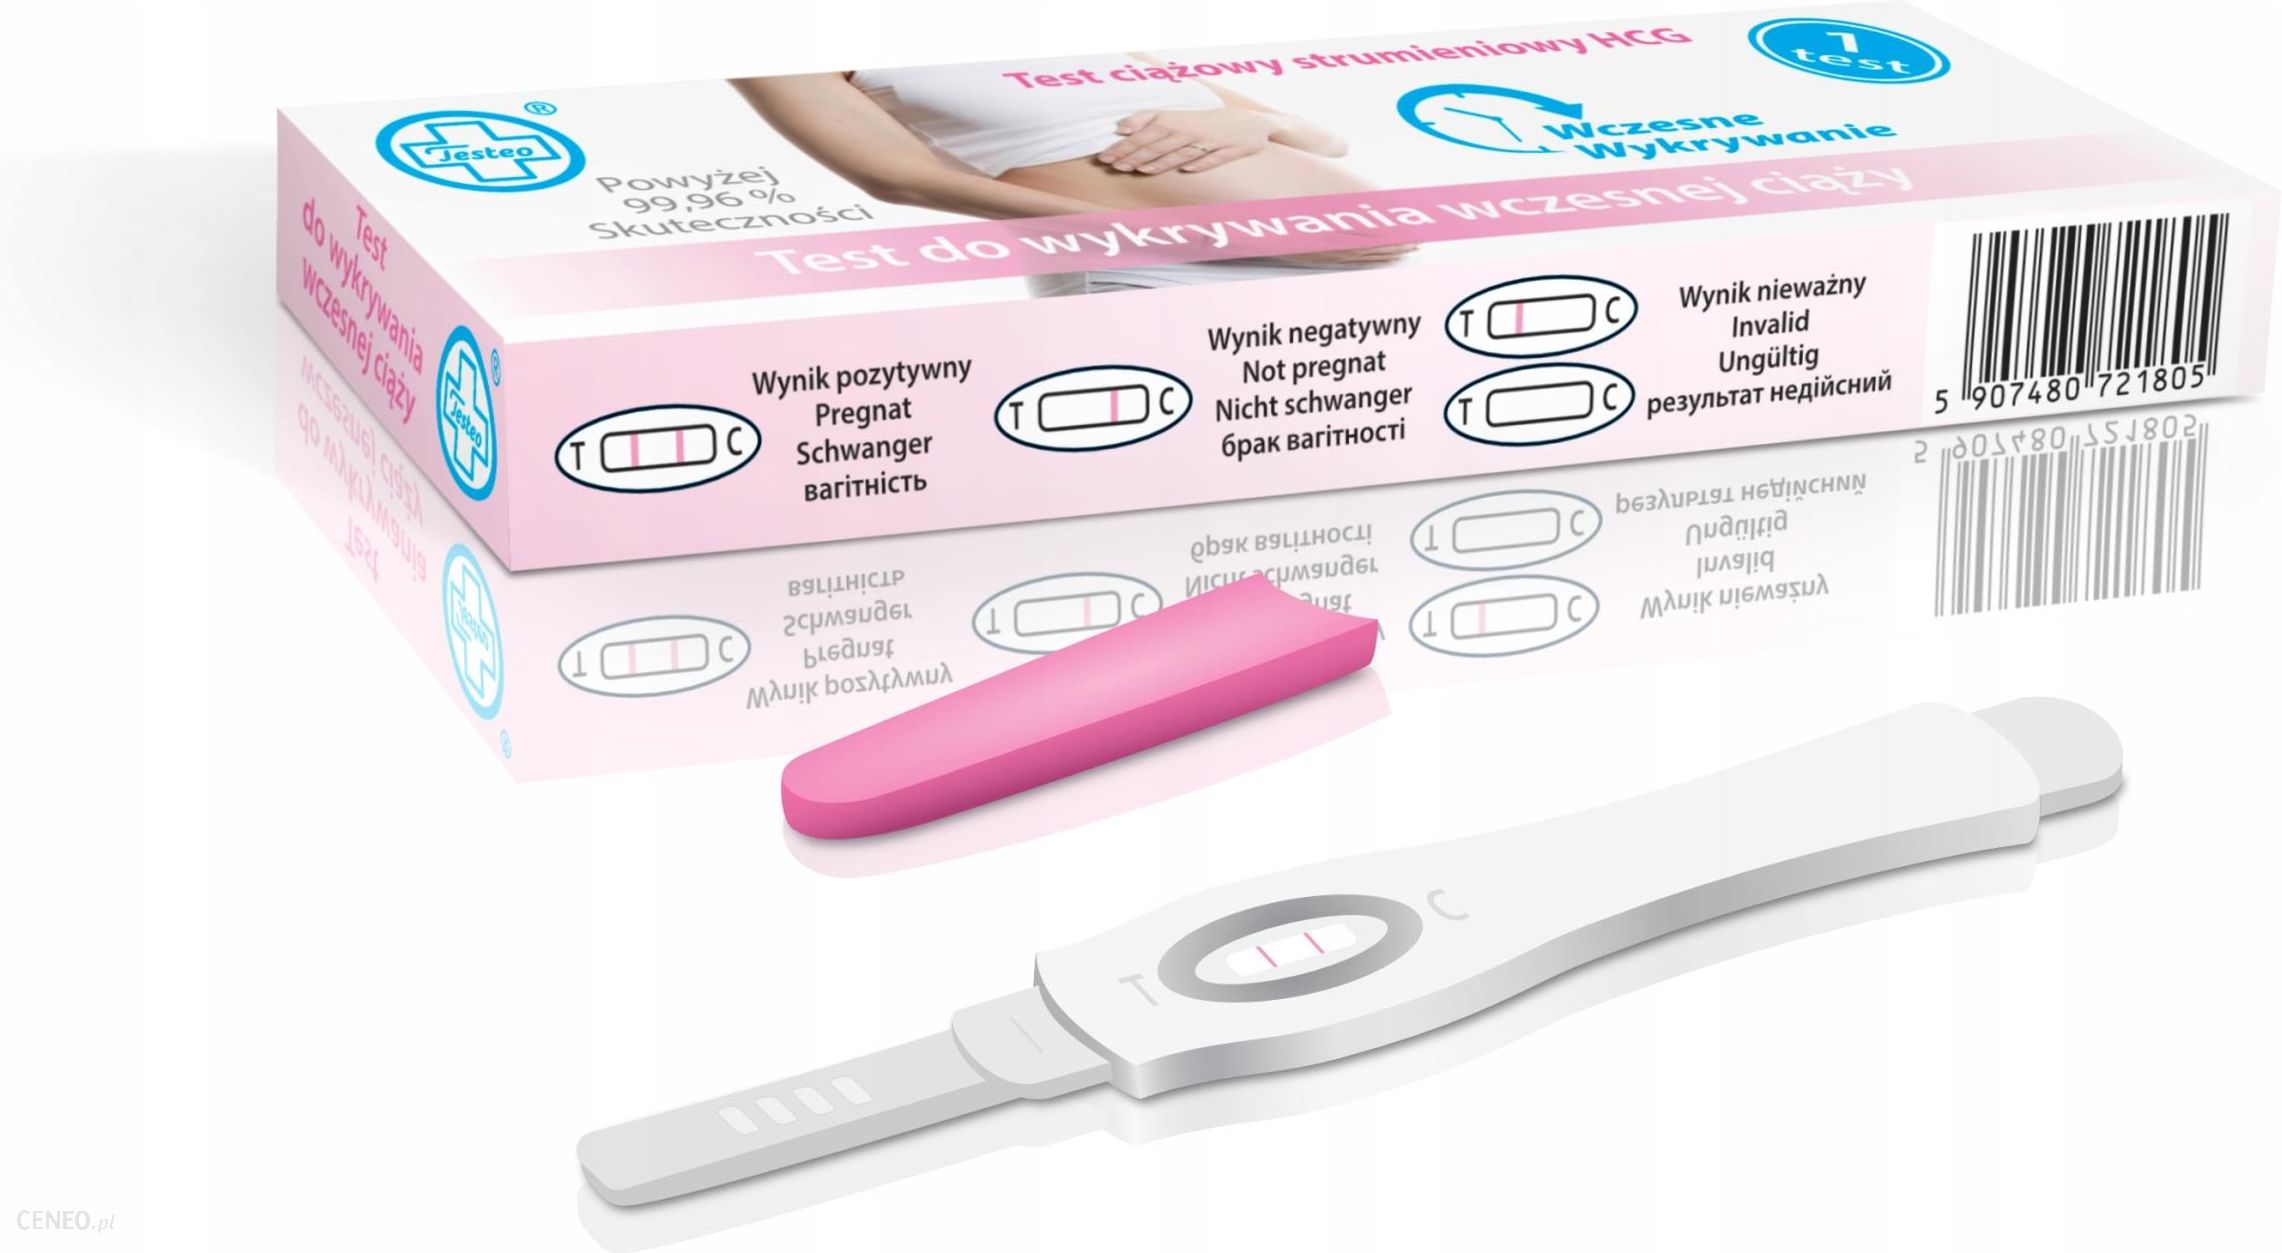 10X Strumieniowy Test Ciążowy Testeo Wczesna Ciąża